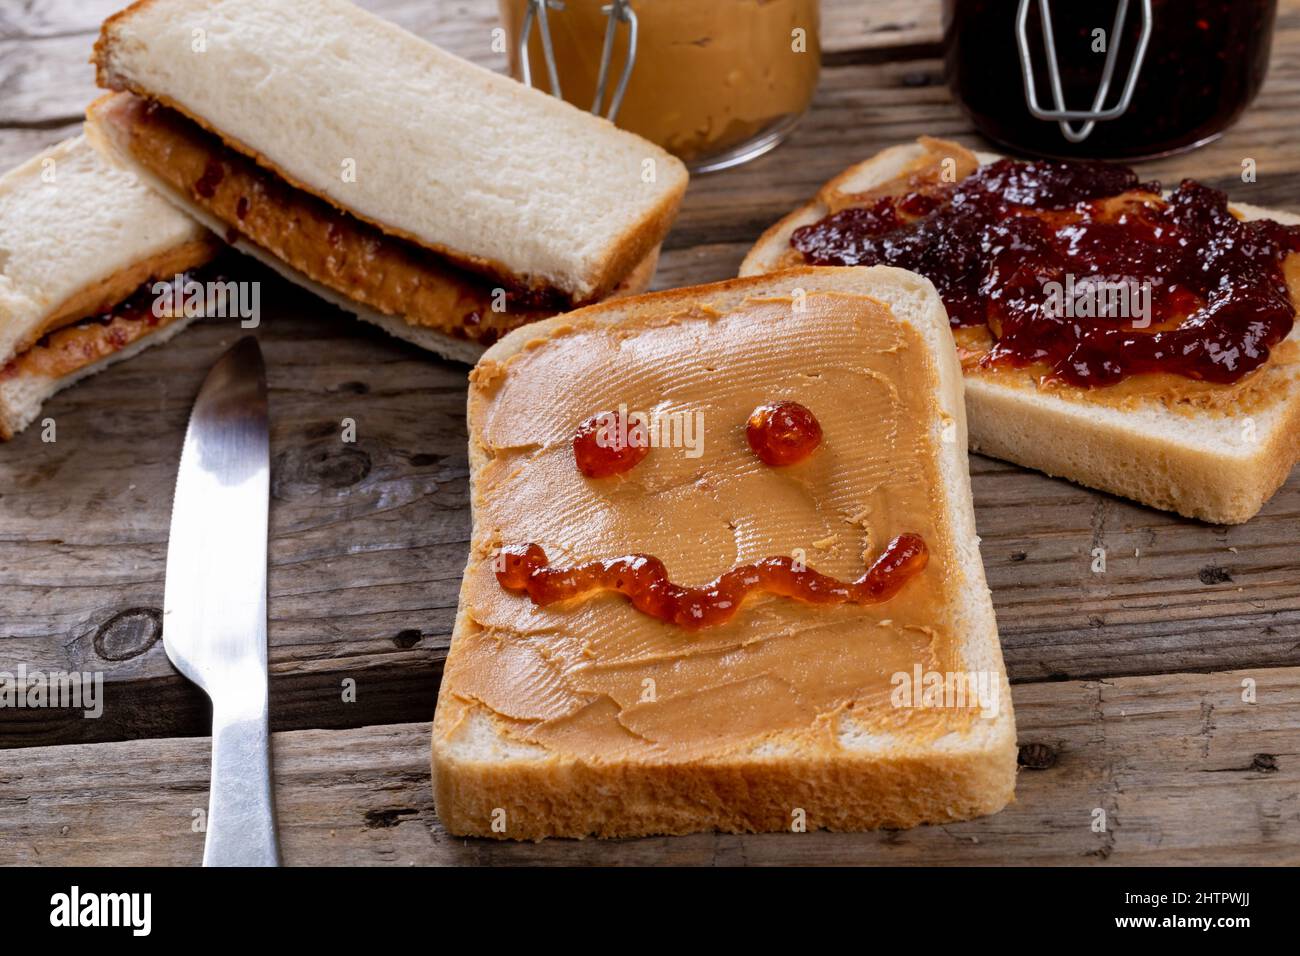 Faccia antropomorfa sul pane con burro di arachidi da tavola, sandwich e vasetti da tavola Foto Stock